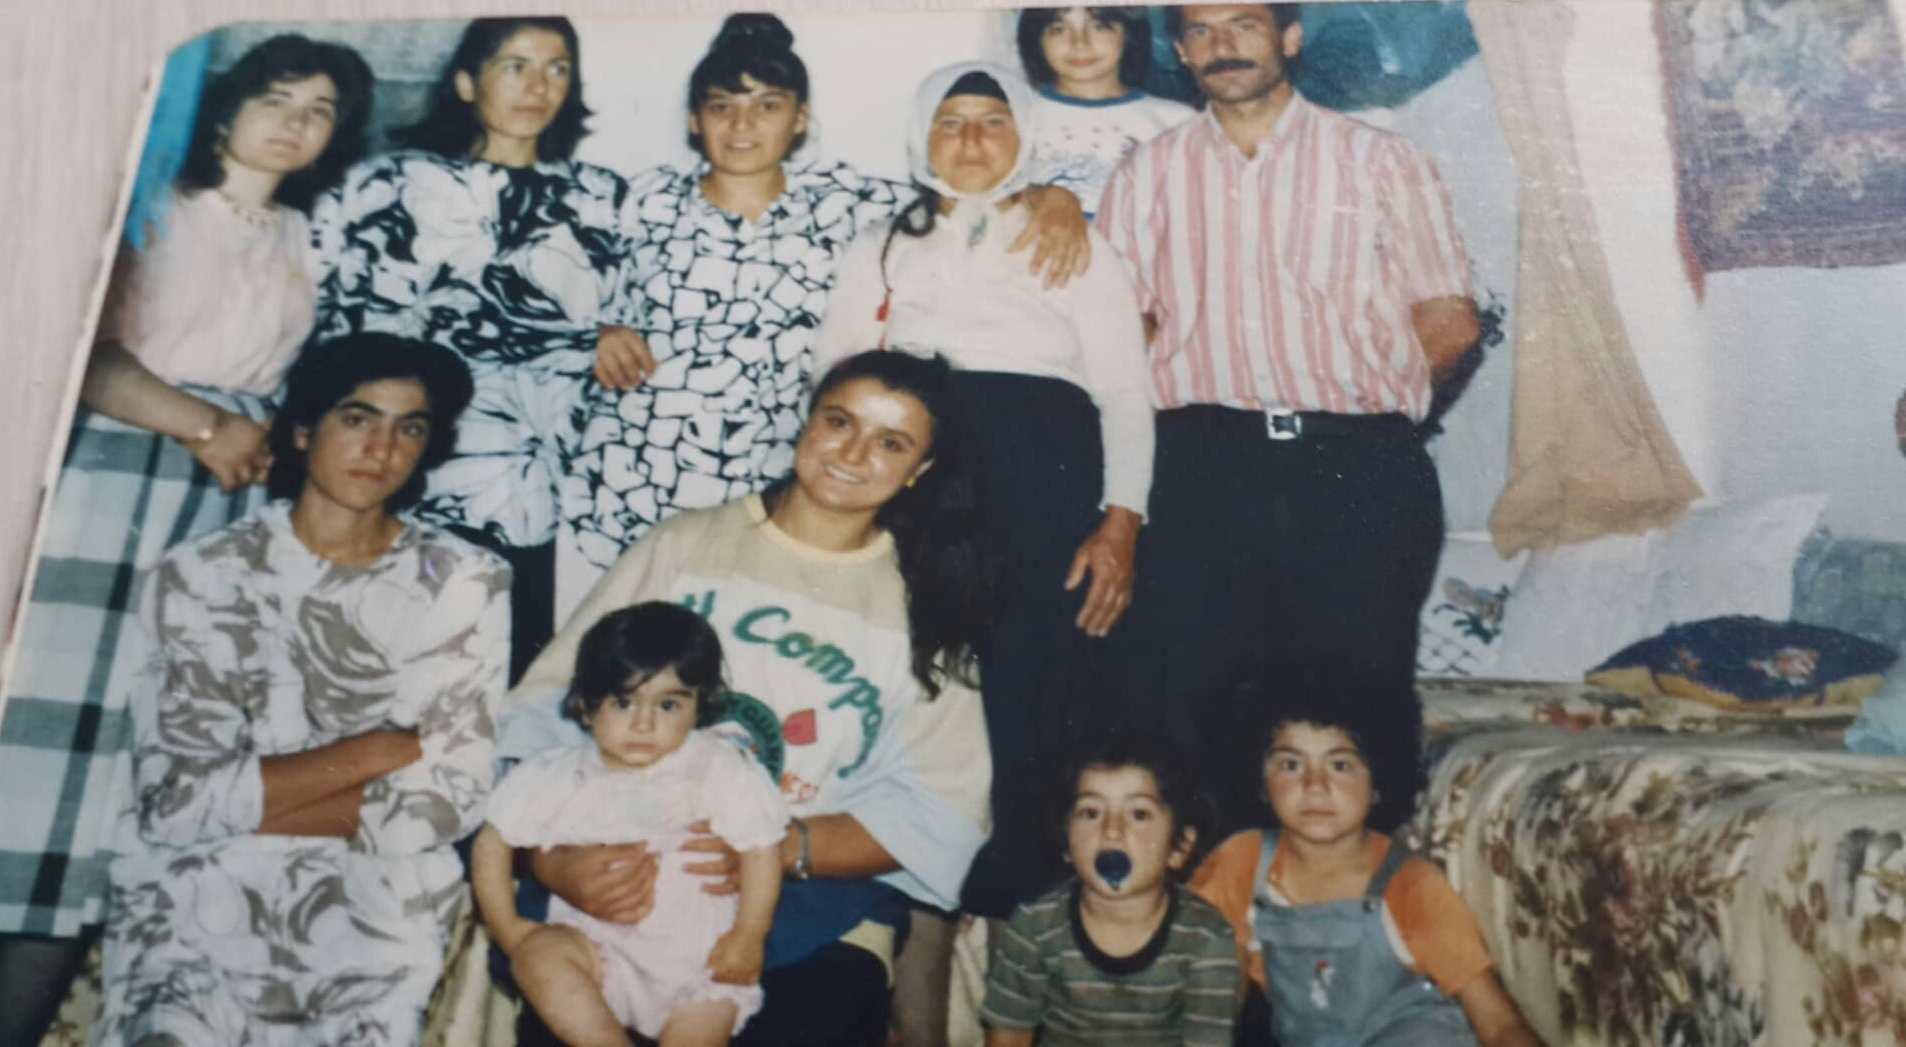 Hemşire Nuray Güllü, 1987 yılında, Mezra köyünde Akkılıç ailesiyle birlikte (Halka bağlılığın ve çalışkanlığın haklı gururu)